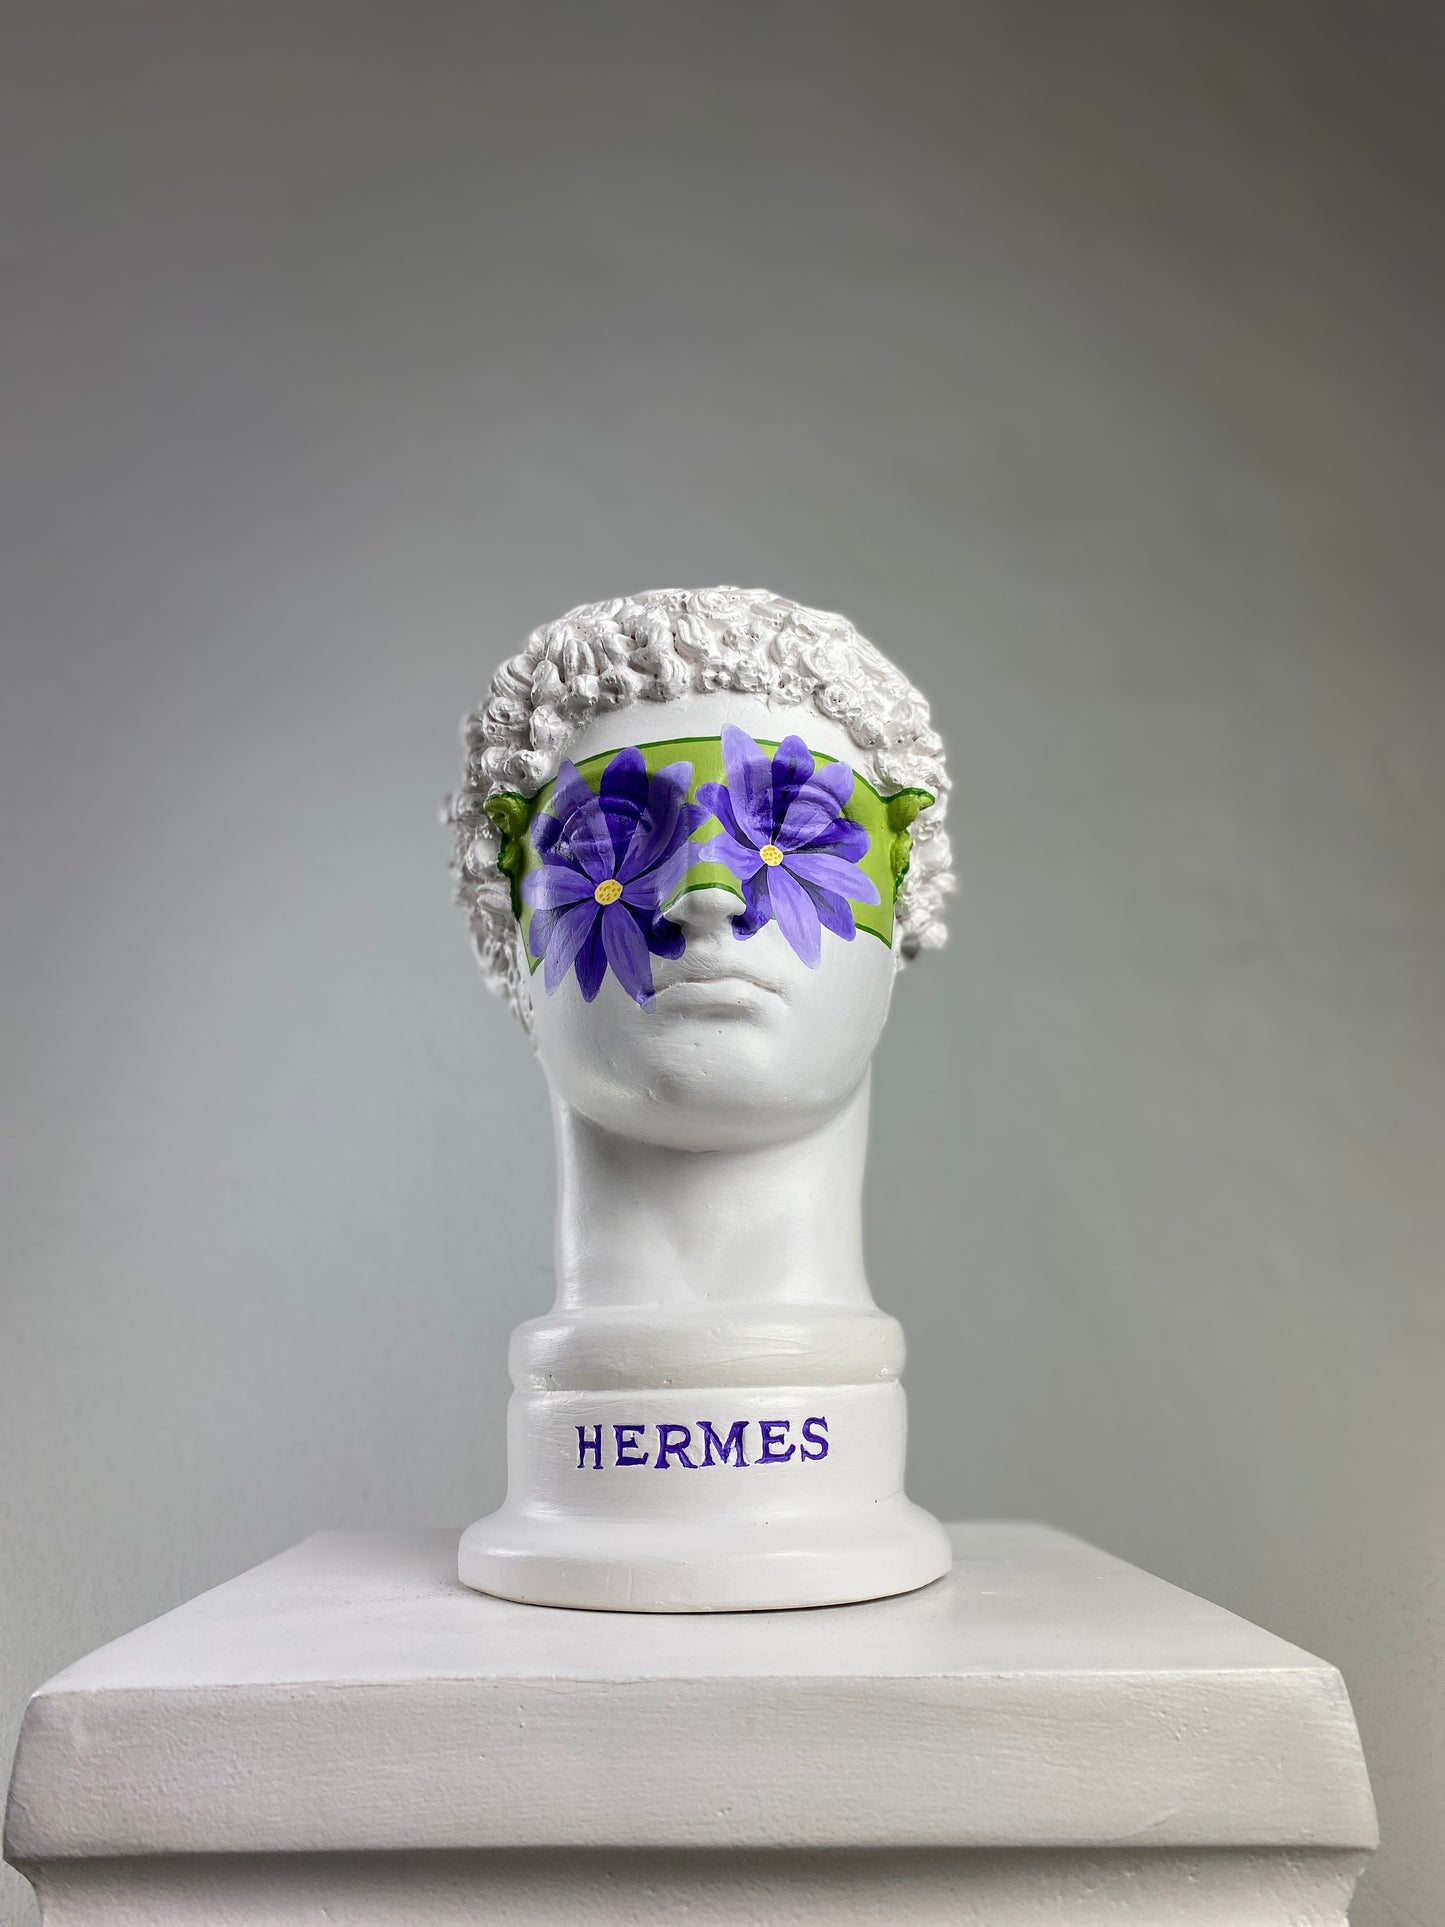 Hermes 'Bloom' Pop Art Sculpture, Modern Home Decor